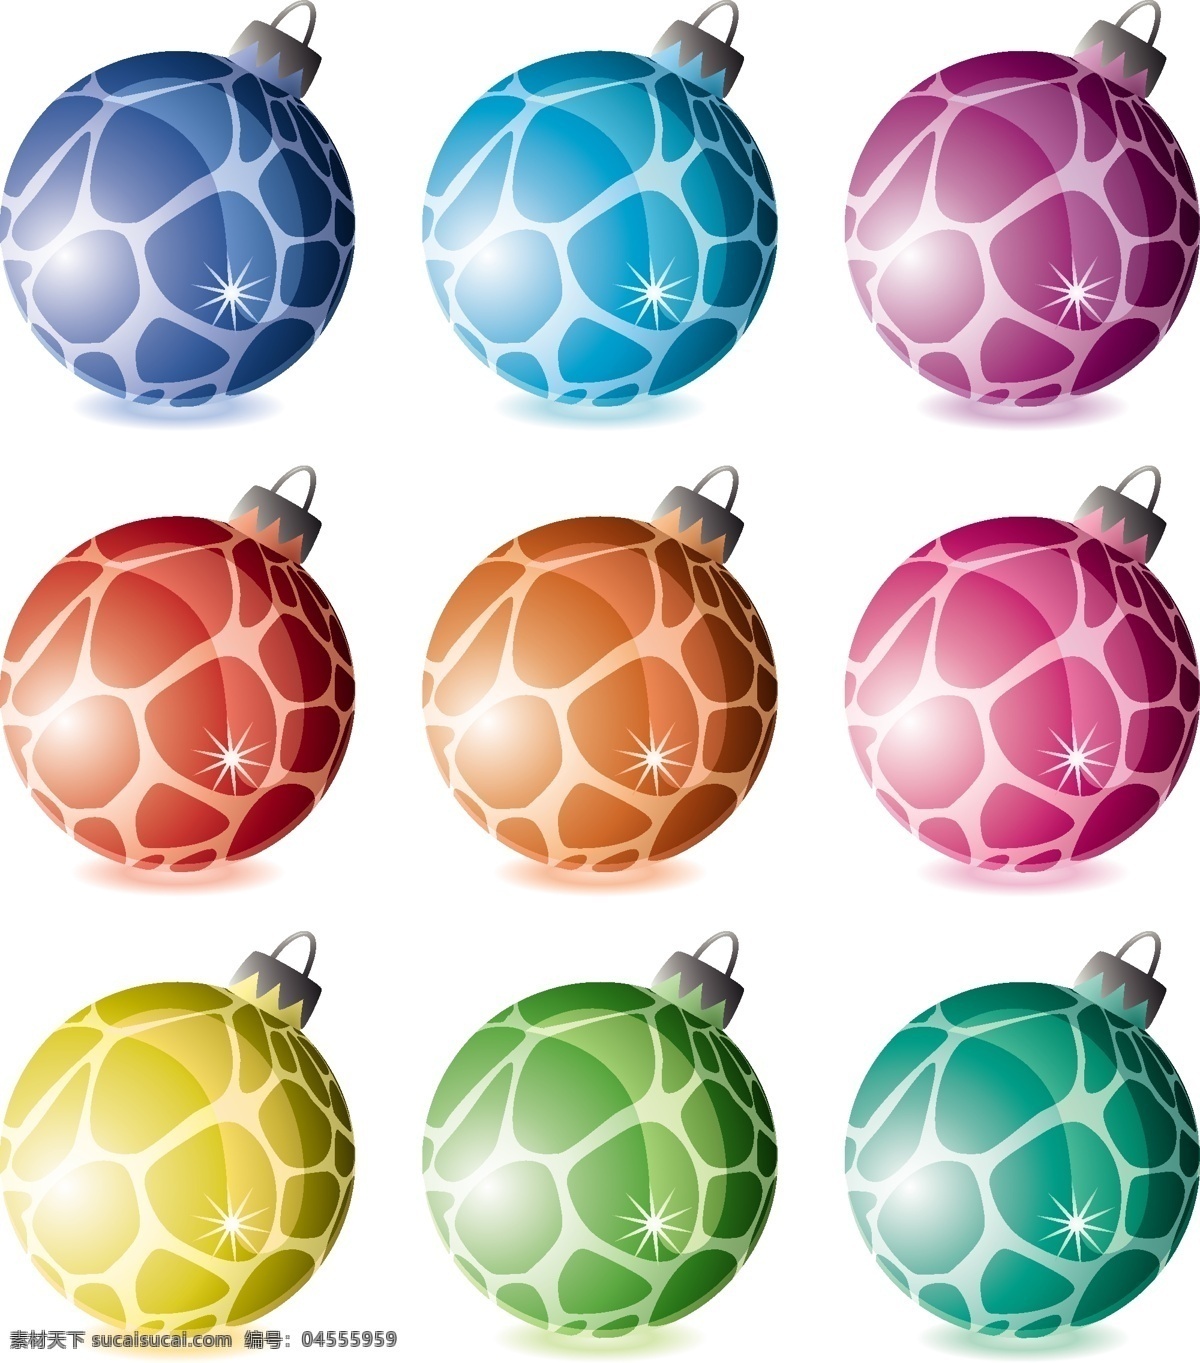 圣诞 装饰 吊球 矢量 圣诞节 节日素材 其他节日